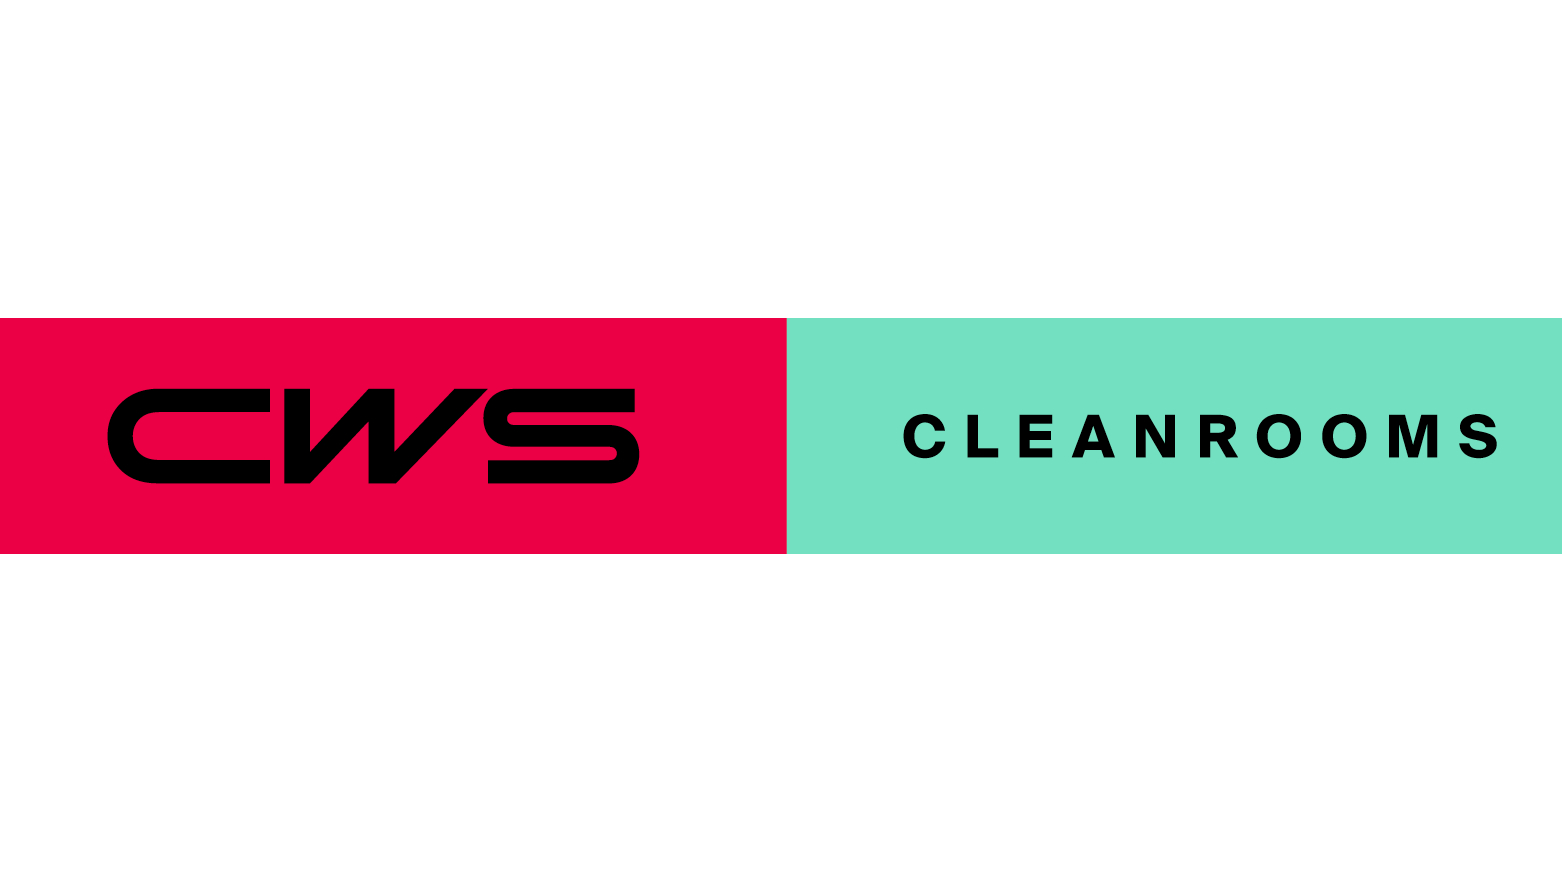 Logo CWS